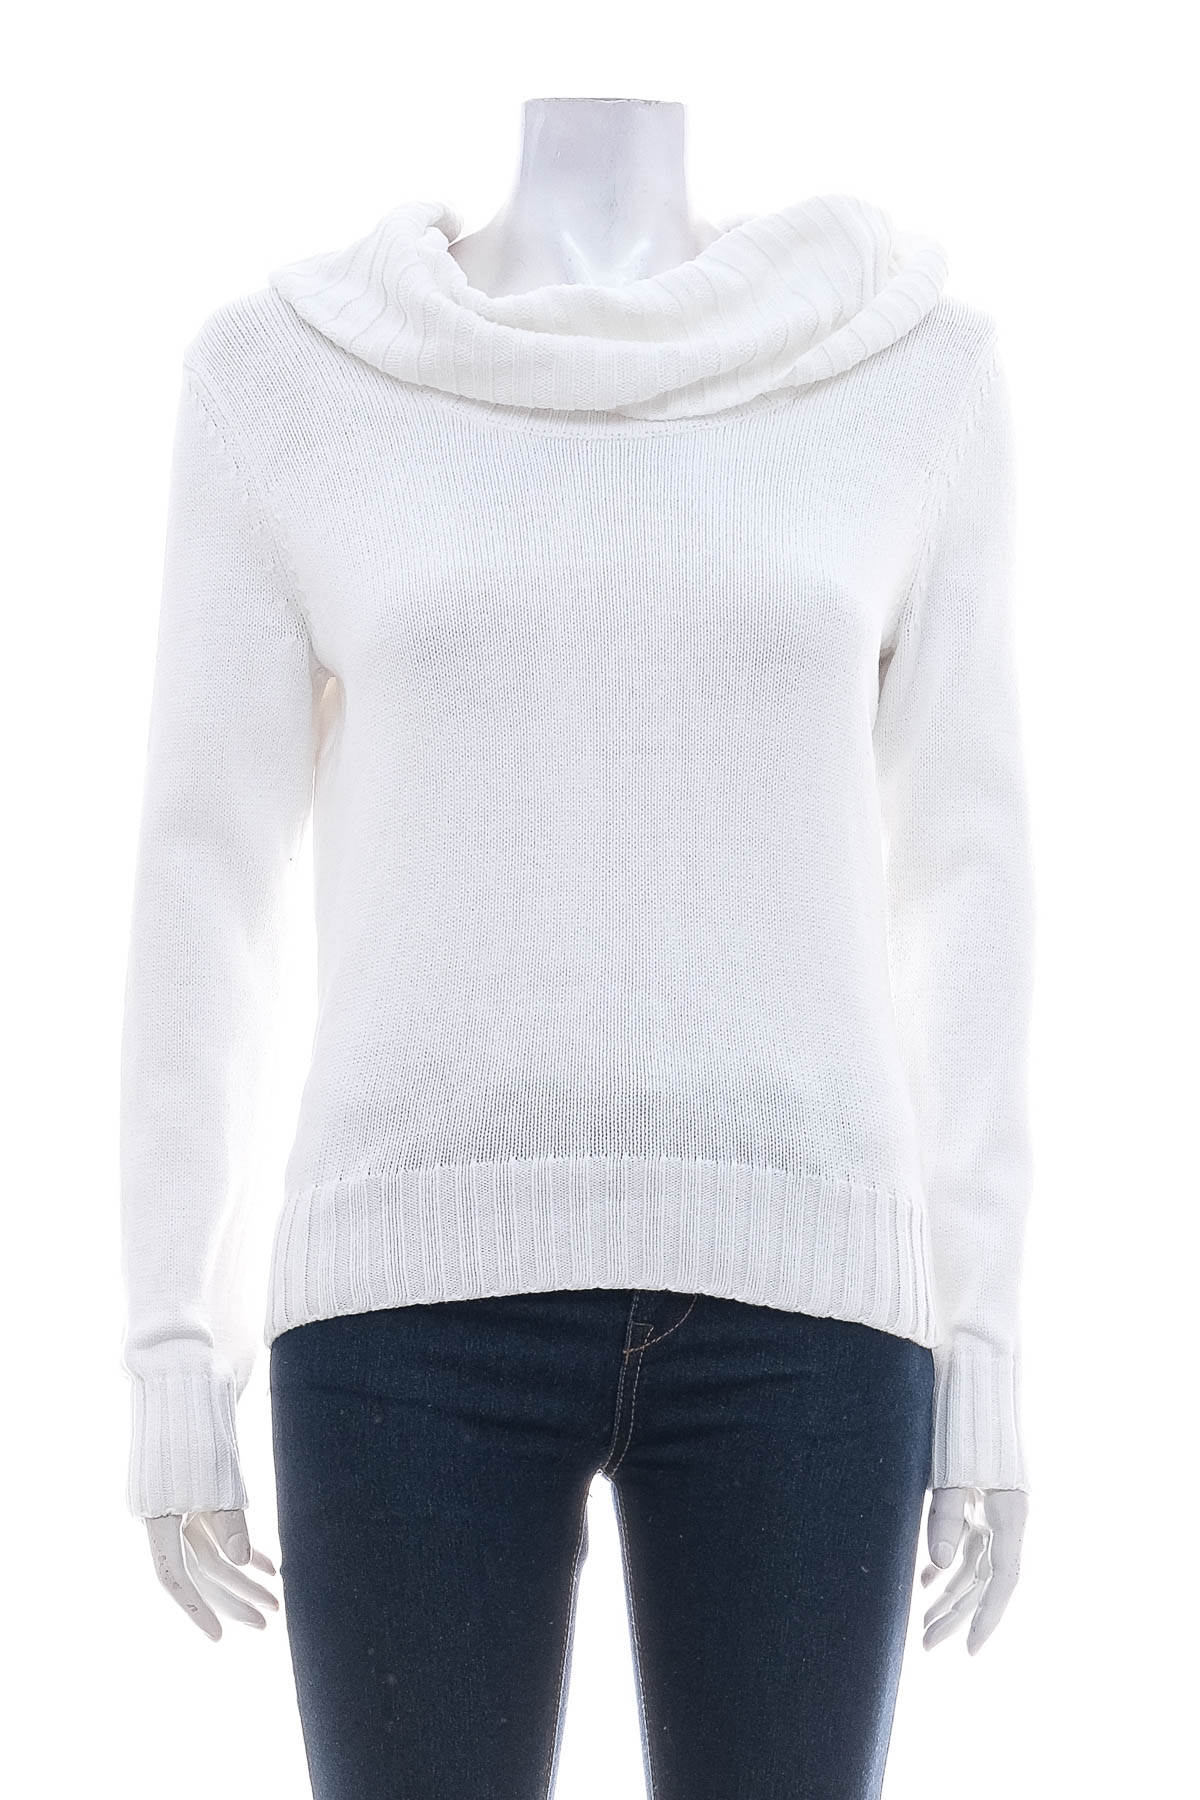 Women's sweater - JEANNE PIERRE - 0